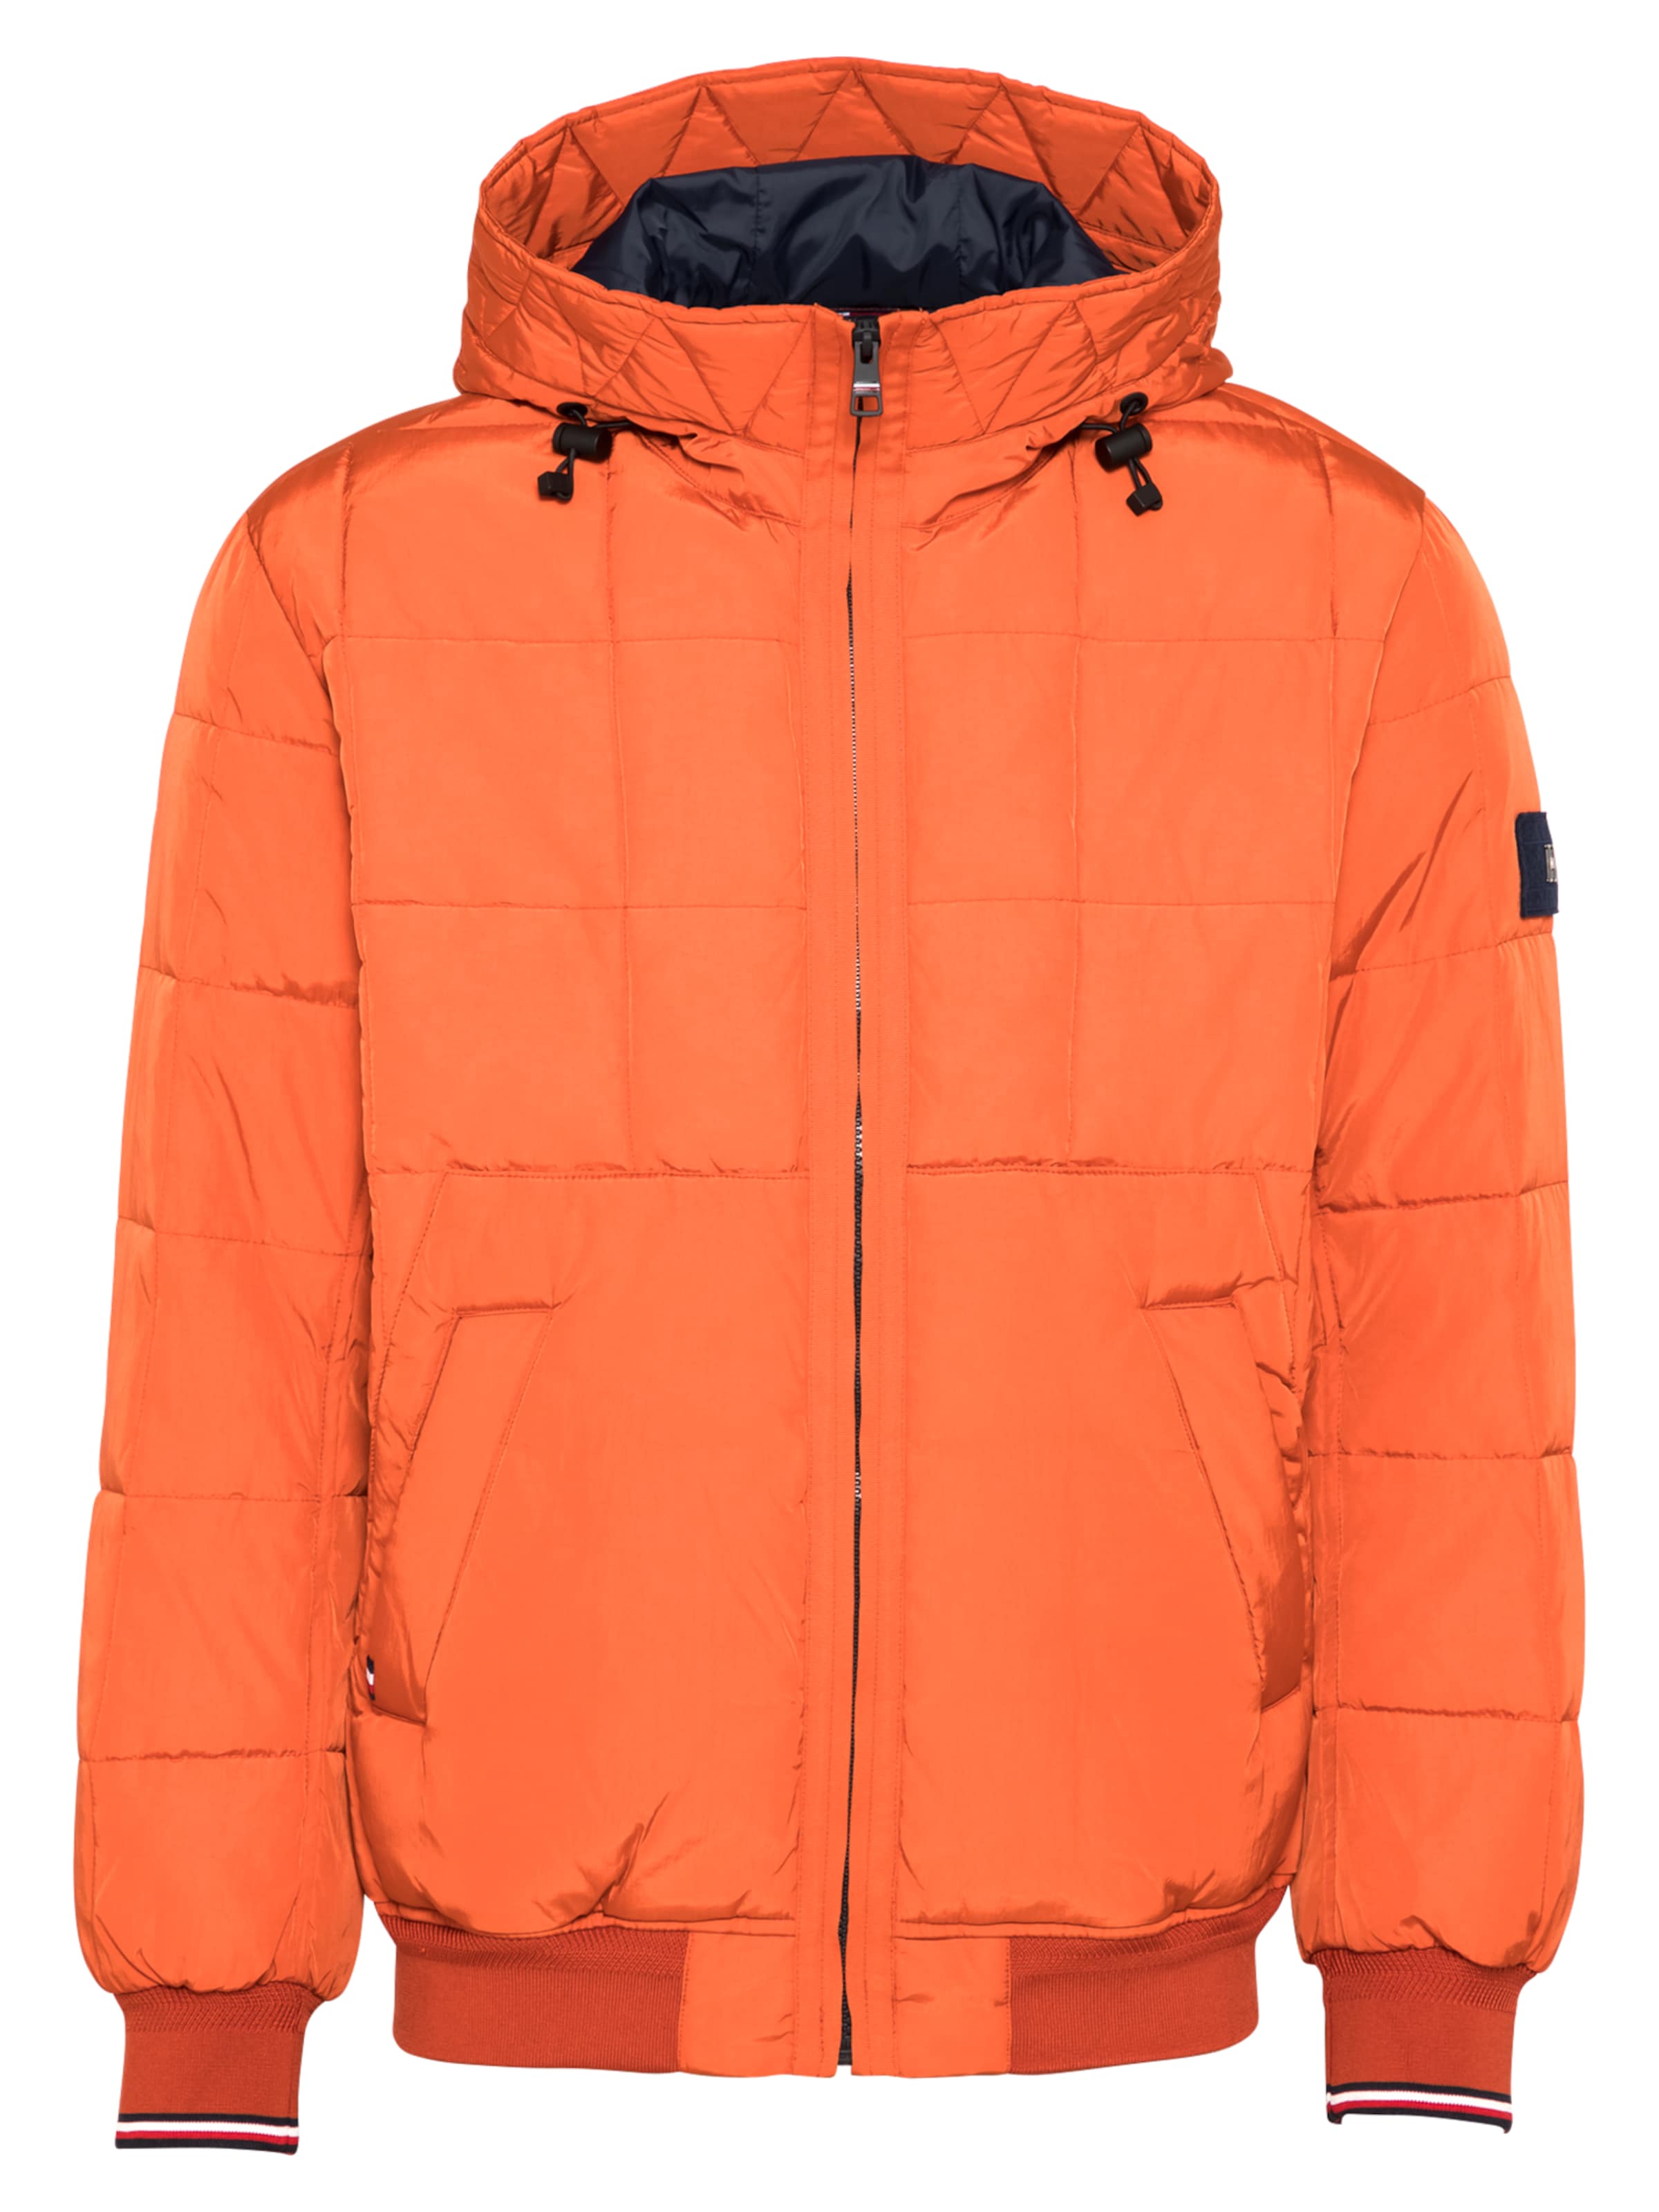 tommy hilfiger orange jacket